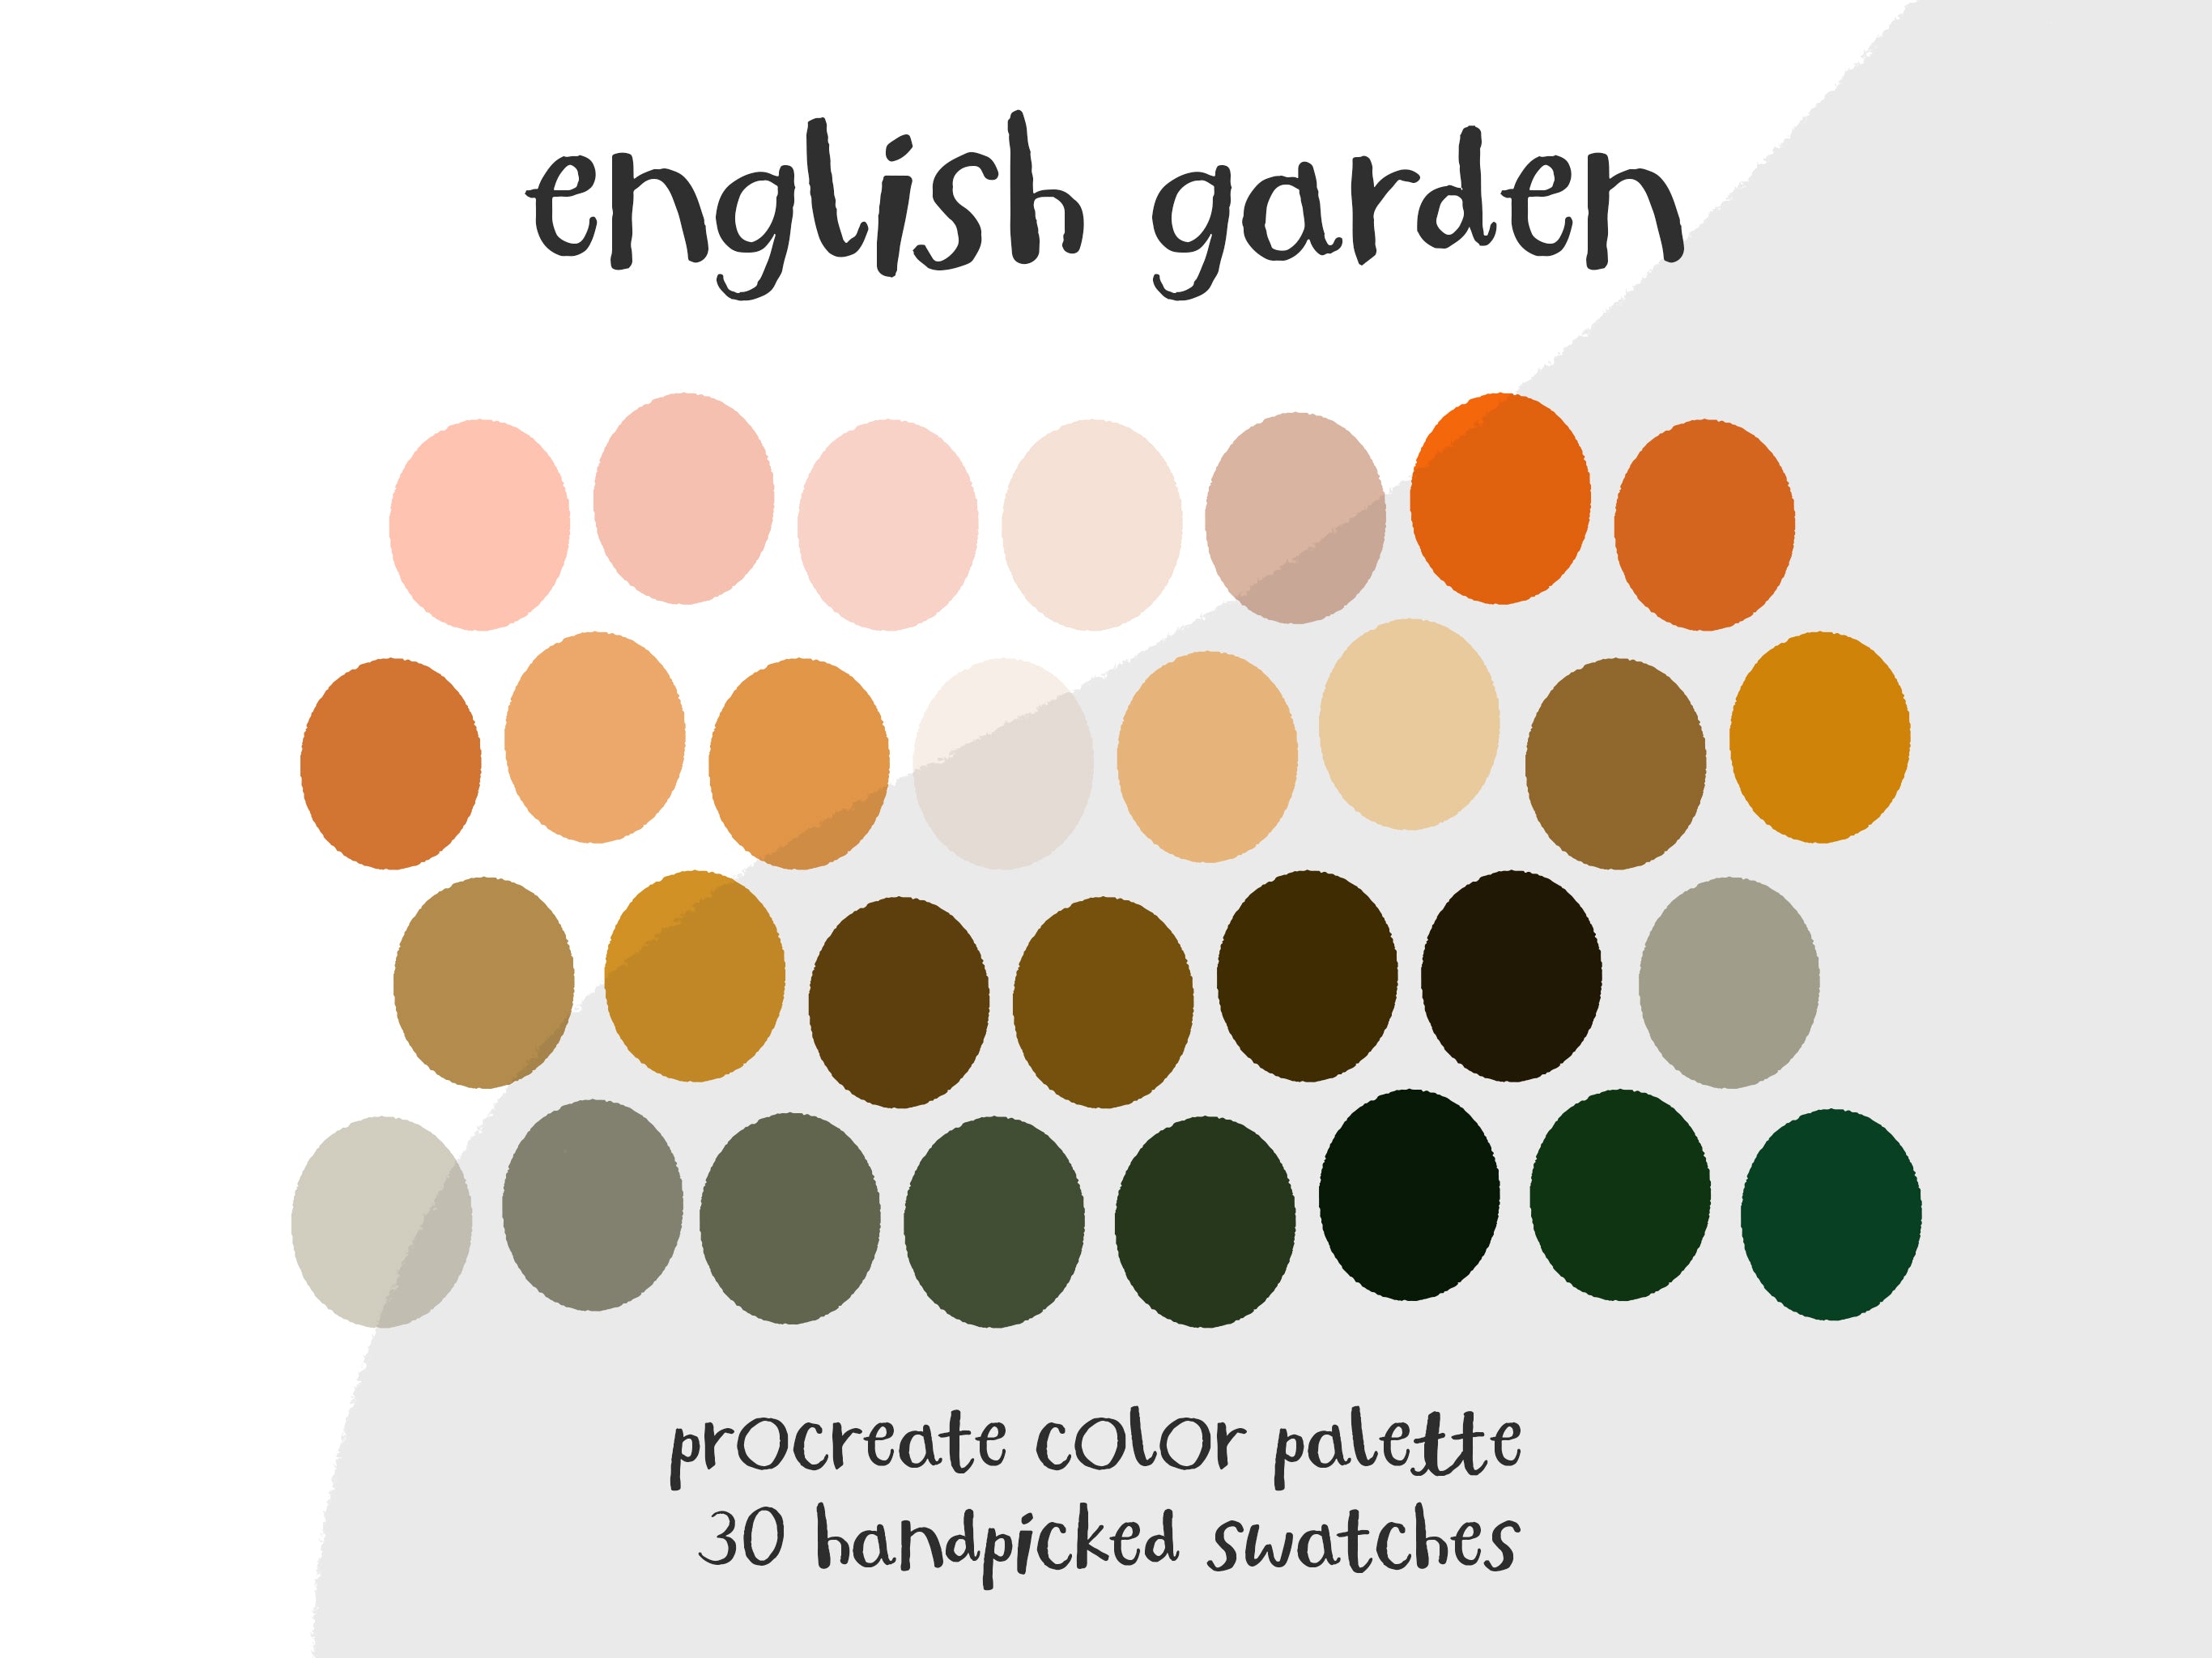 English Garden